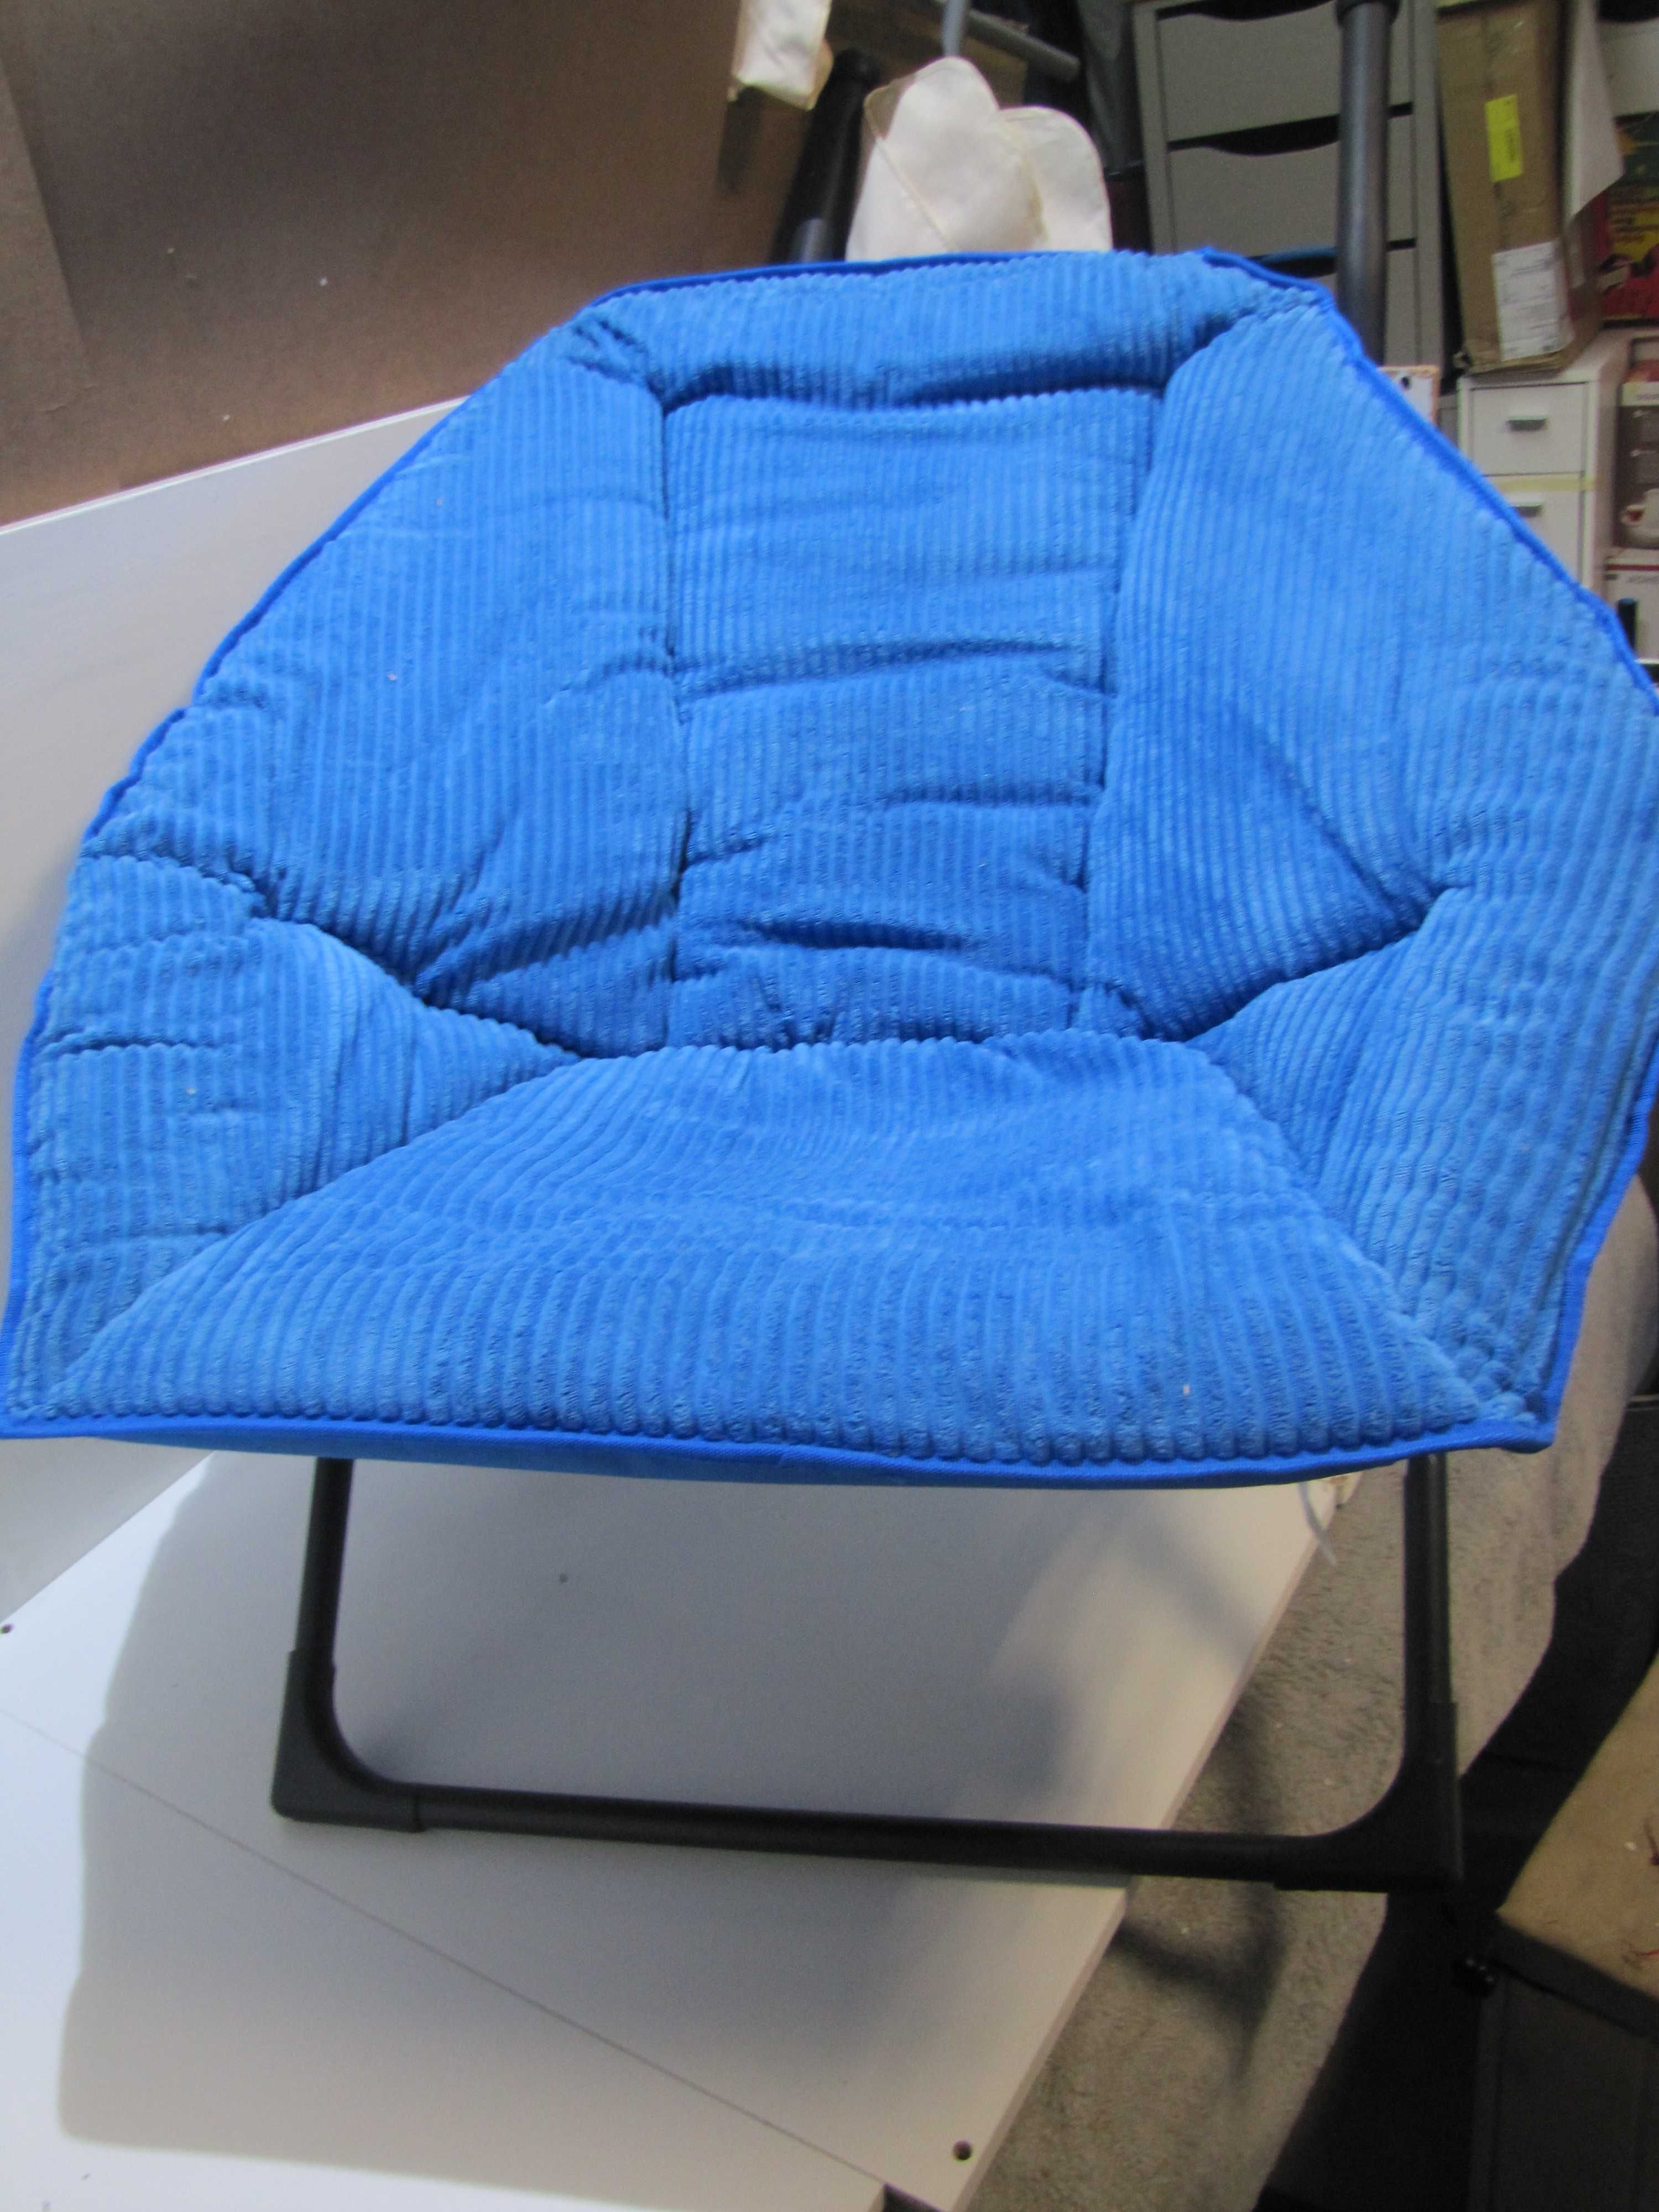 Fotel składany krzesło niebieski tapicerowany  pluszowe